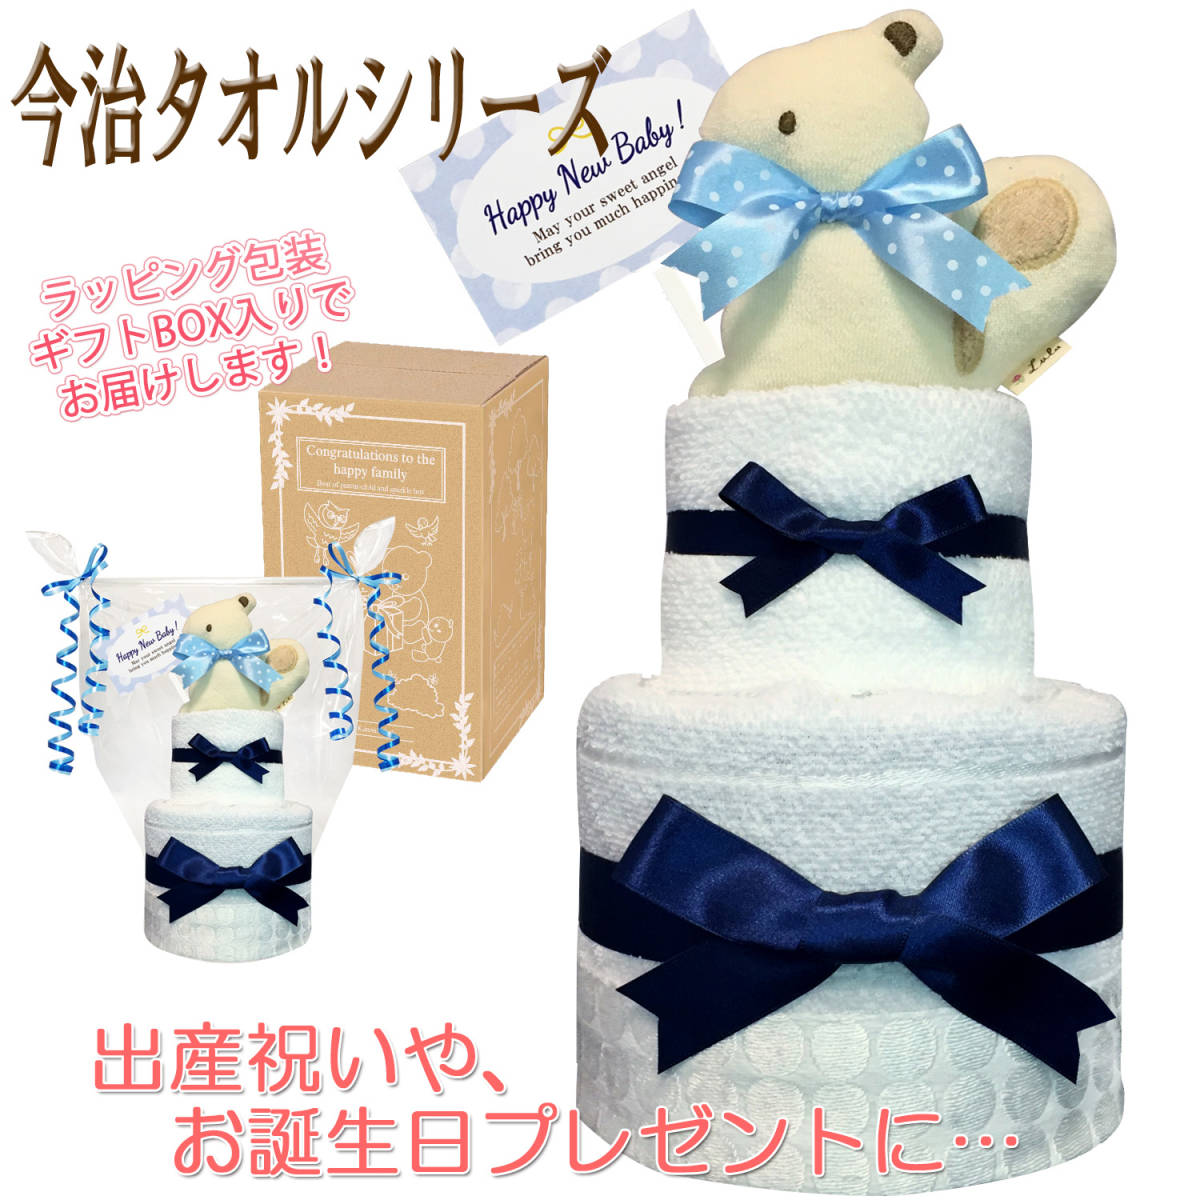 Рекомендуется для празднования родов мальчиков! Идеально подходит для полотенца Imabari, двухэтапный роскошный торт с подгузником/детский душ, 100 -дневное празднование, идеально подходит для половины дня рождения! бесплатная доставка